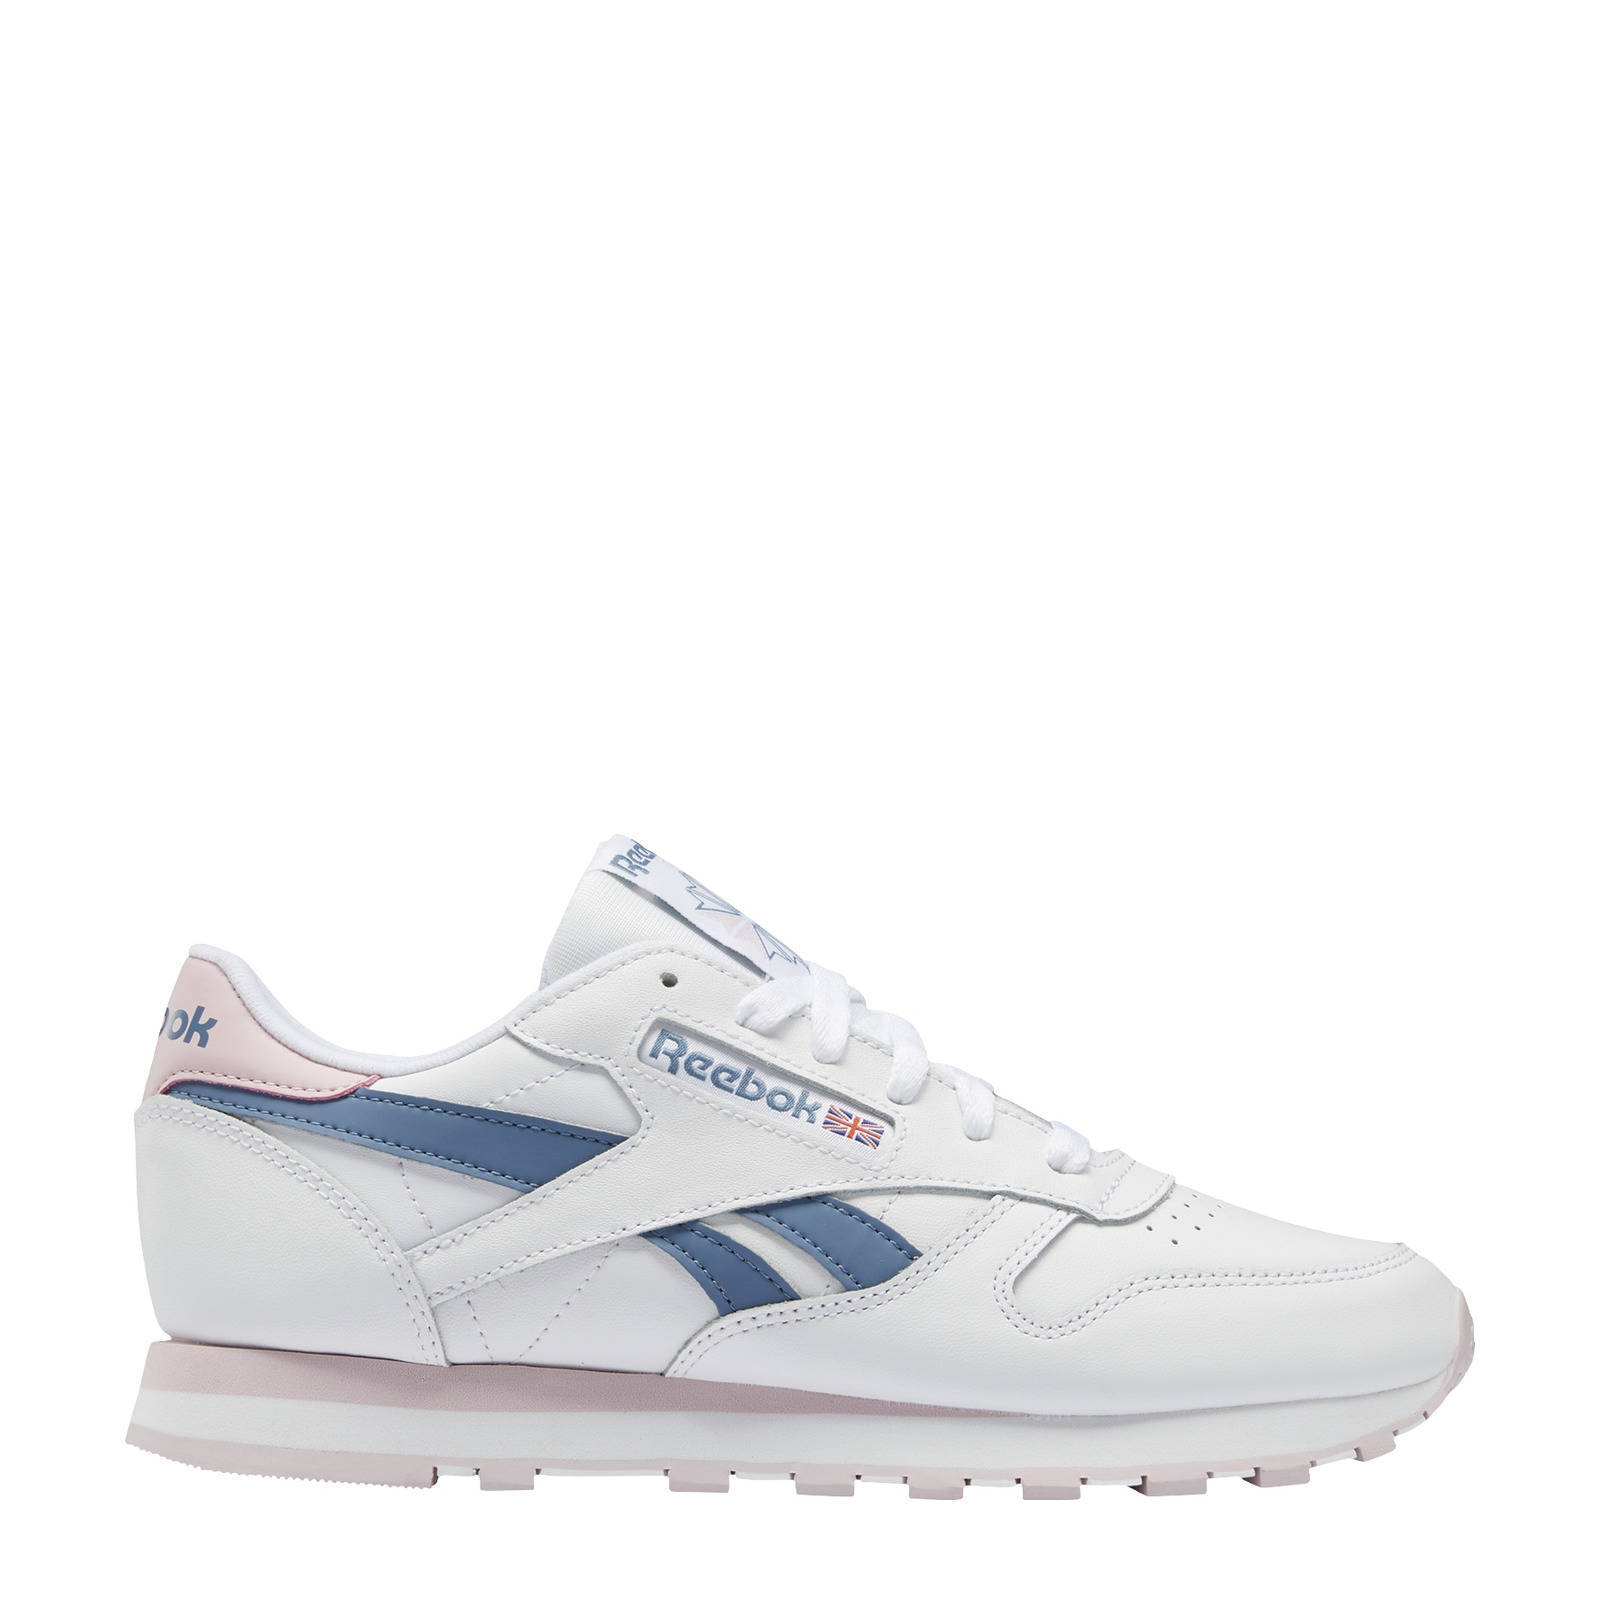 Reebok Classics Classic Leather sneakers wit/roze/grijsblauw online kopen